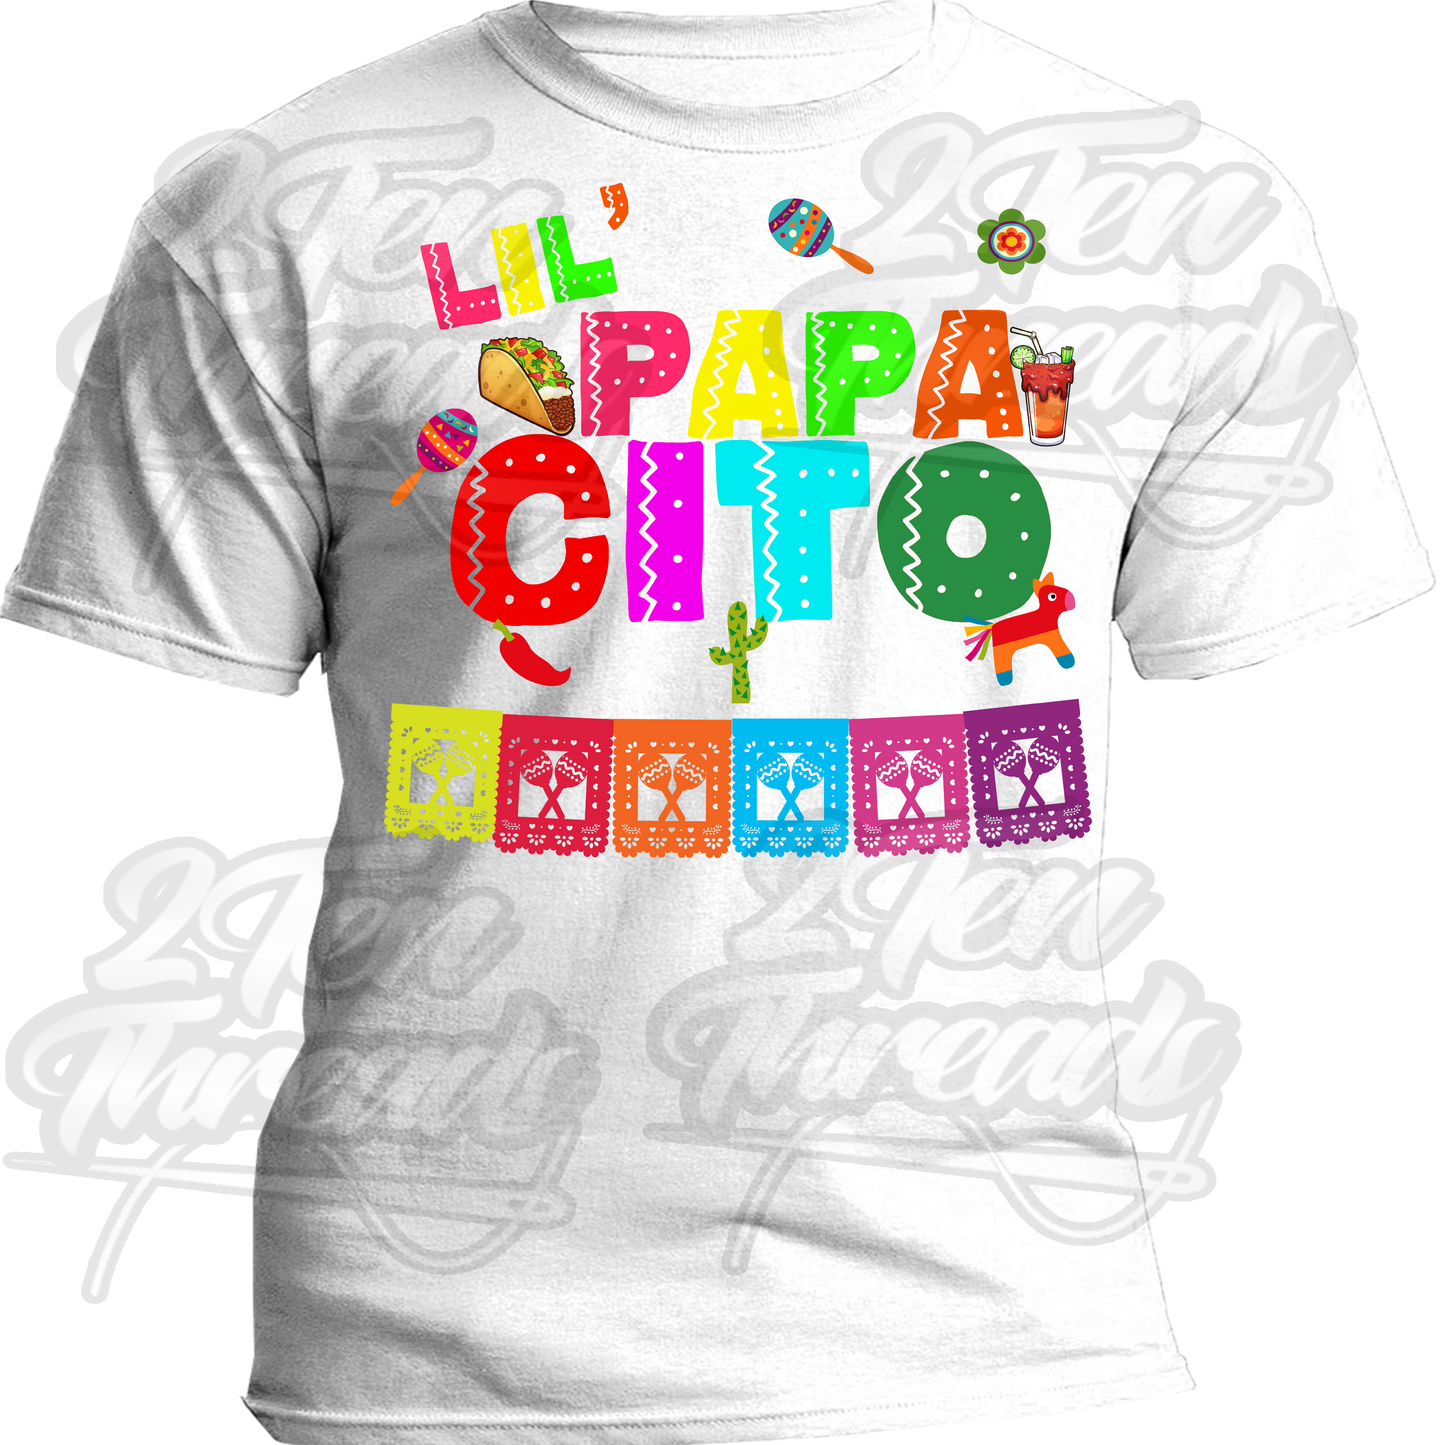 Lil 'Papacito Shirt